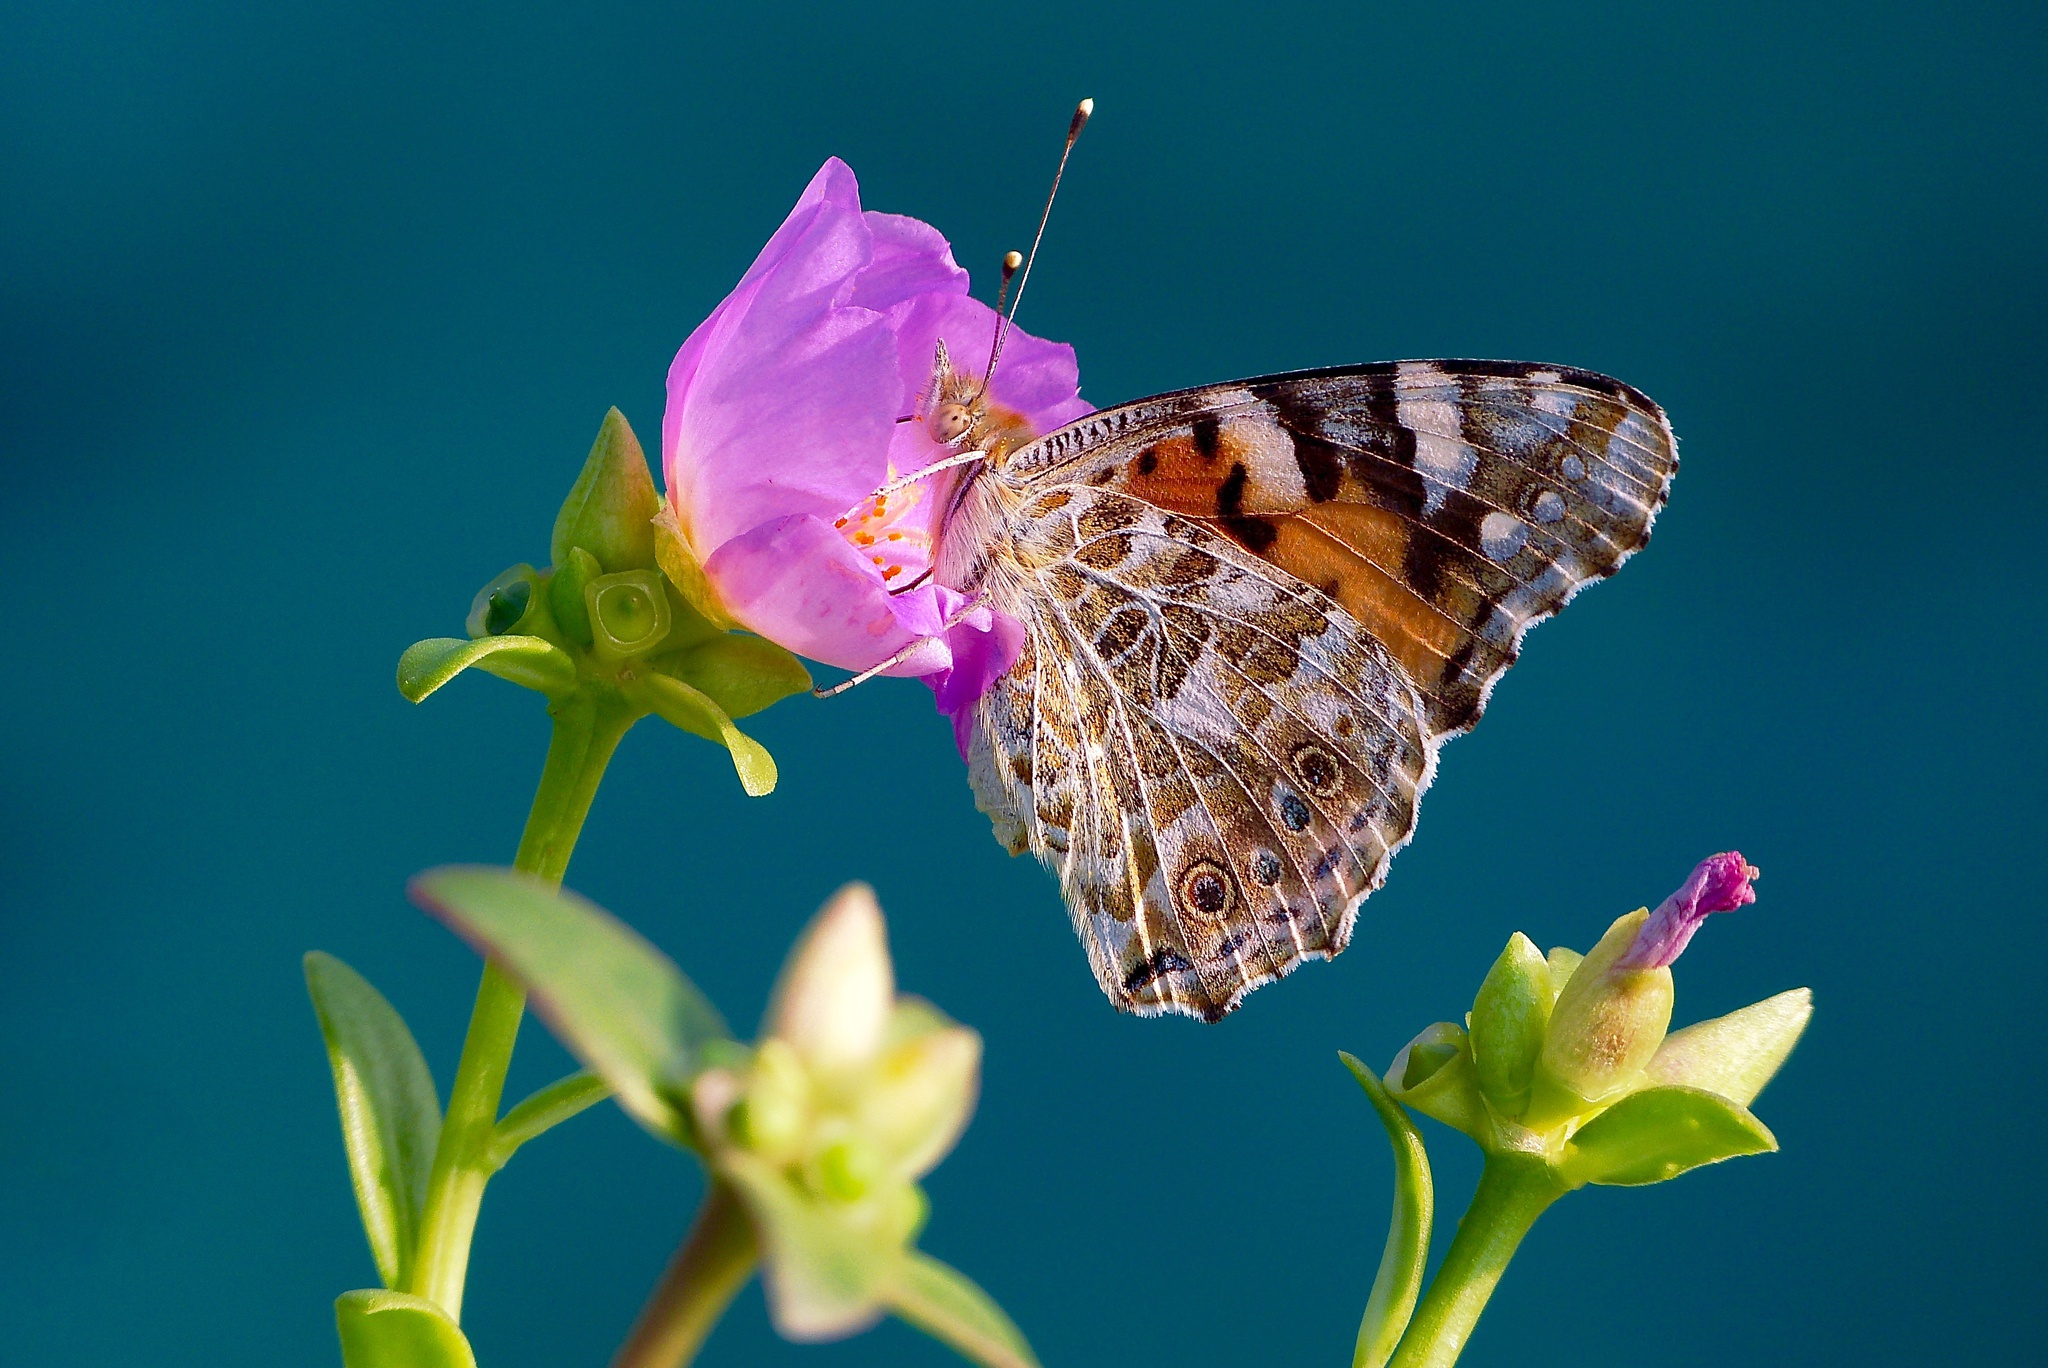 Descarga gratuita de fondo de pantalla para móvil de Animales, Flor, Flor Rosa, Insecto, Mariposa, Macrofotografía.